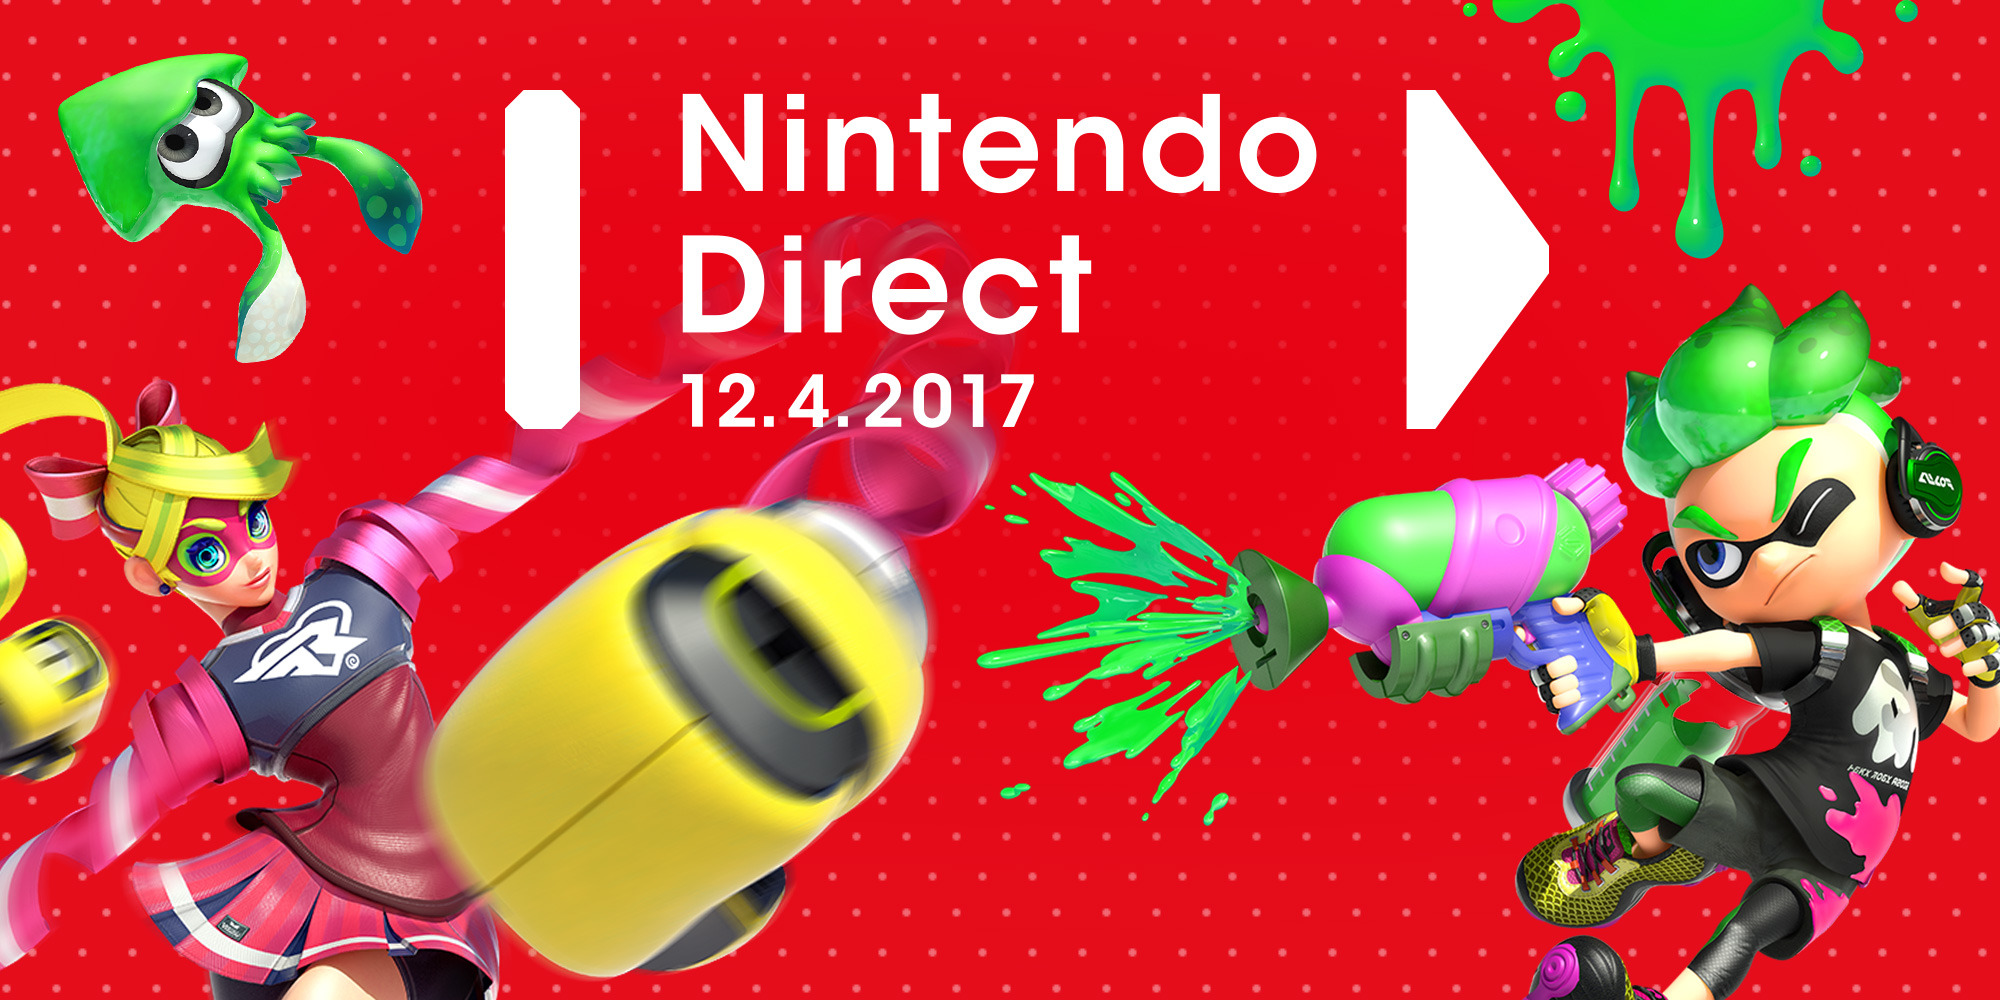 Nova Nintendo Direct será transmitida nesta quarta-feira, dia 12 de abril!